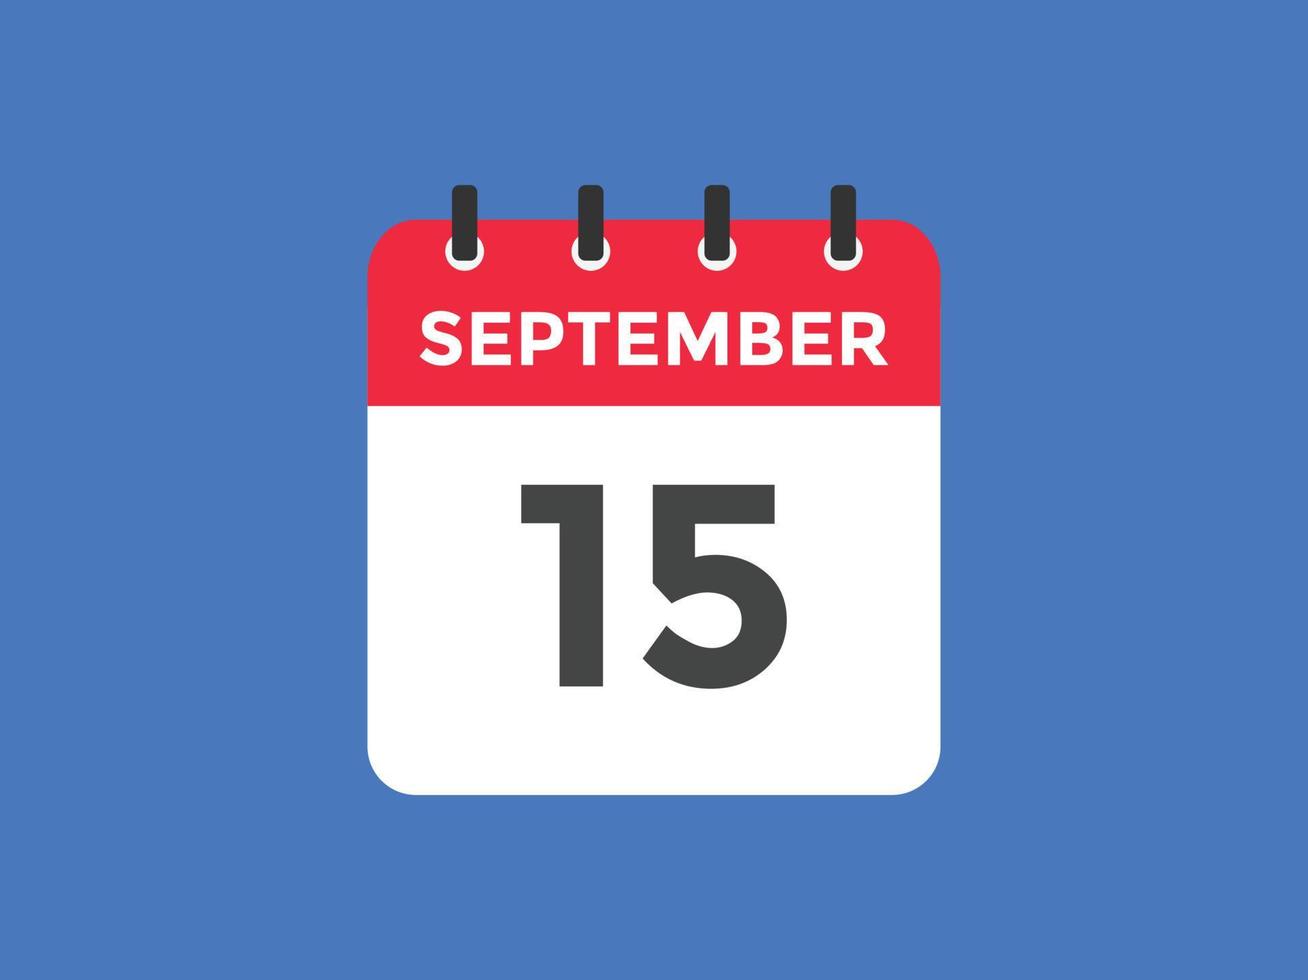 lembrete de calendário de 15 de setembro. 15 de setembro modelo de ícone de calendário diário. modelo de design de ícone do calendário 15 de setembro. ilustração vetorial vetor